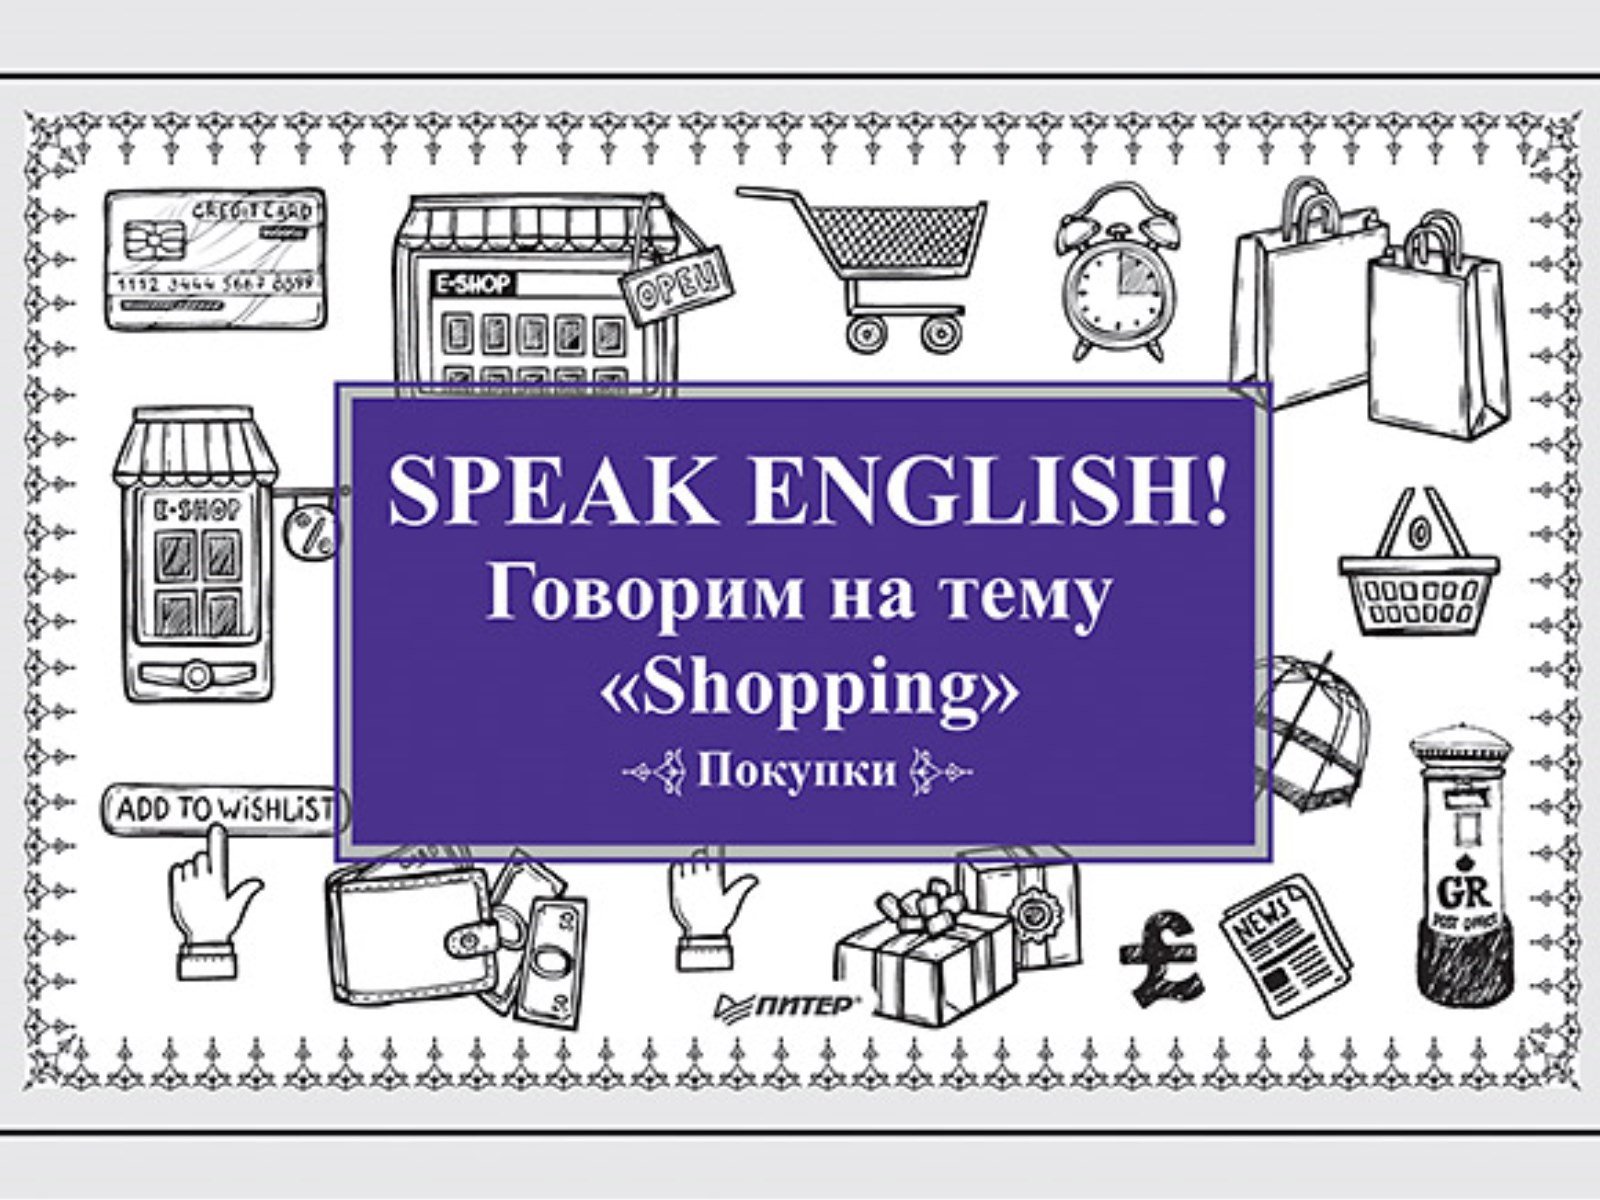 Speak ENGLISH!    Shopping ()